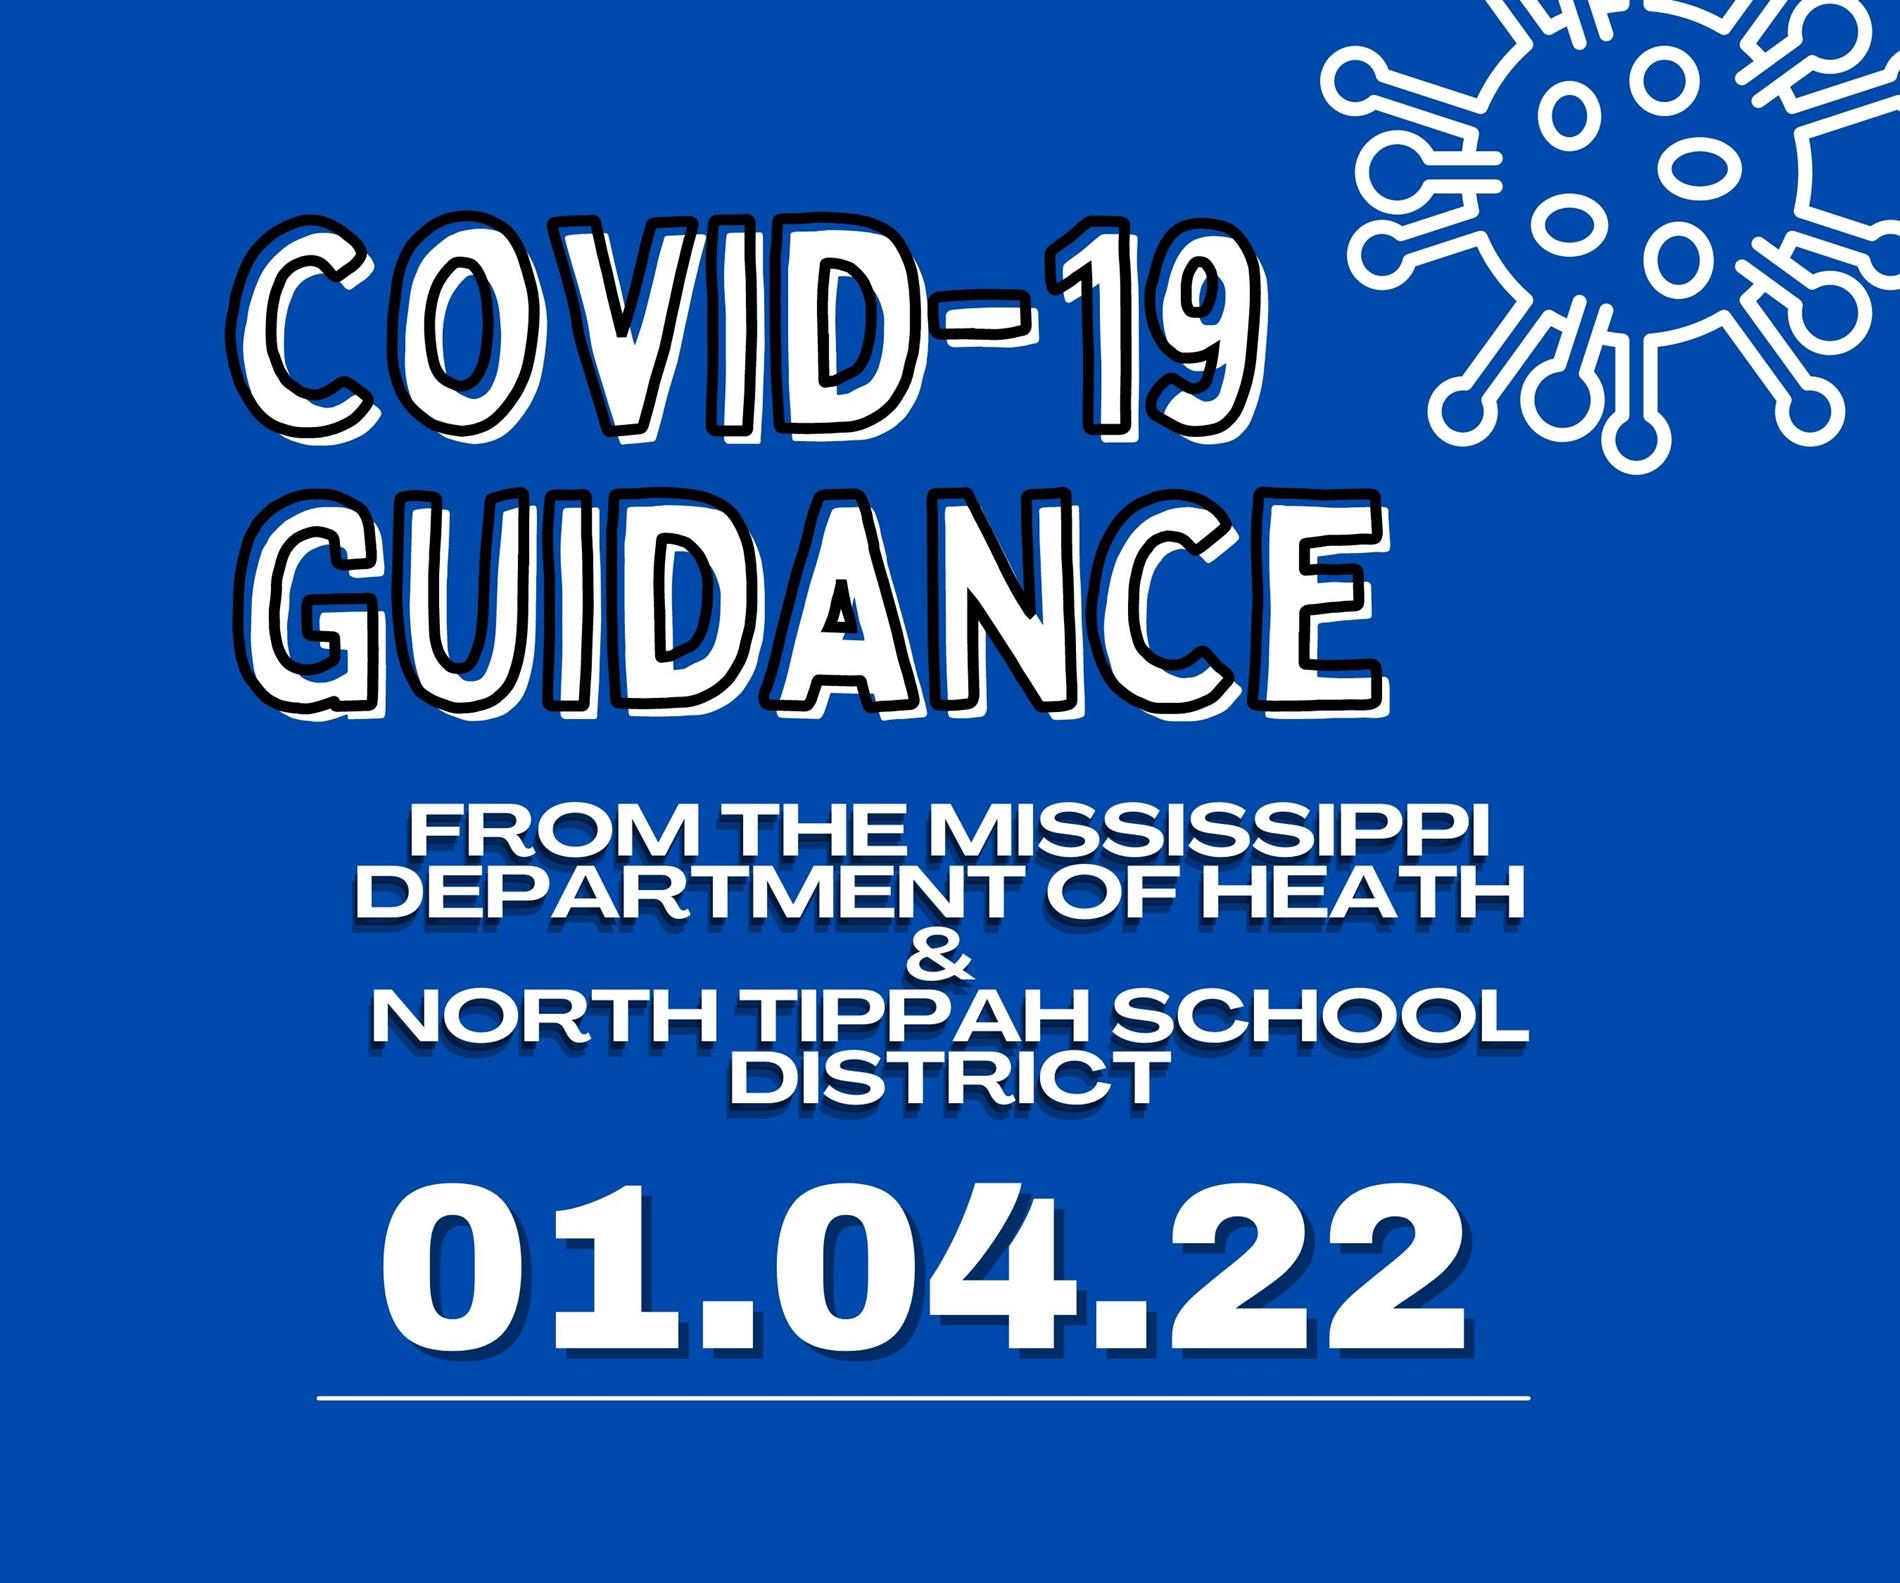 COVID 19 Update